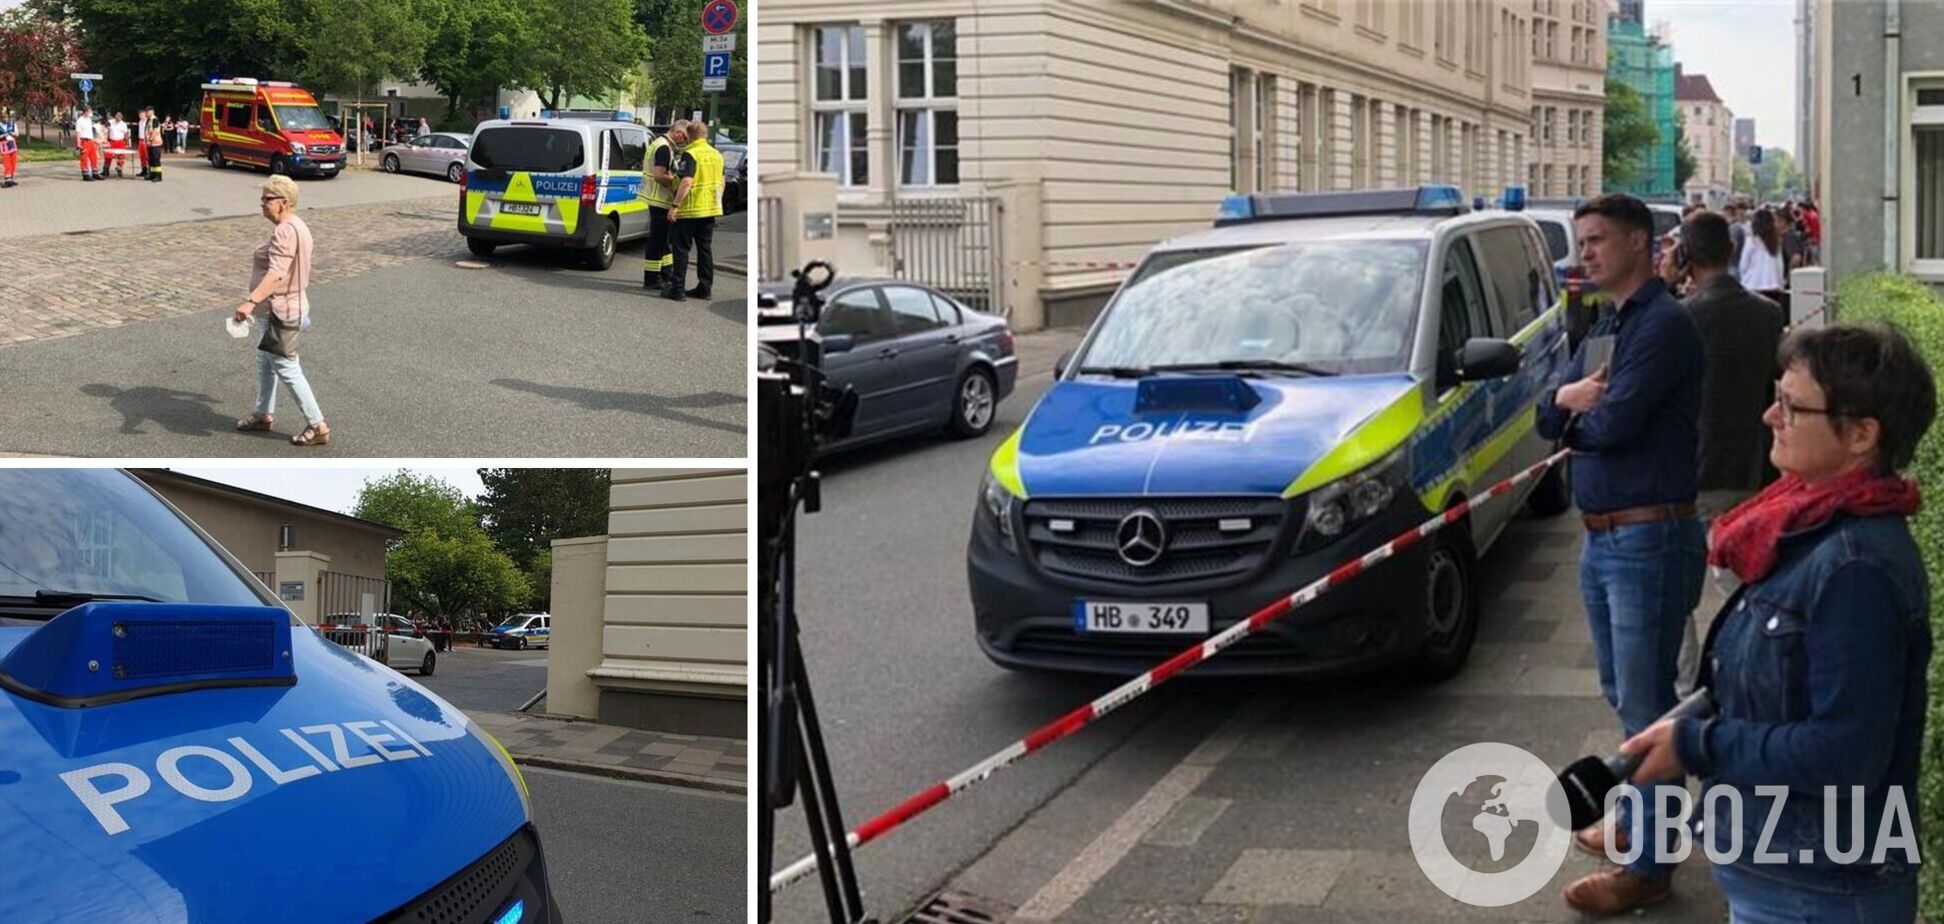 В Германии произошла стрельба в школе, есть раненый: СМИ раскрыли детали ЧП. Фото